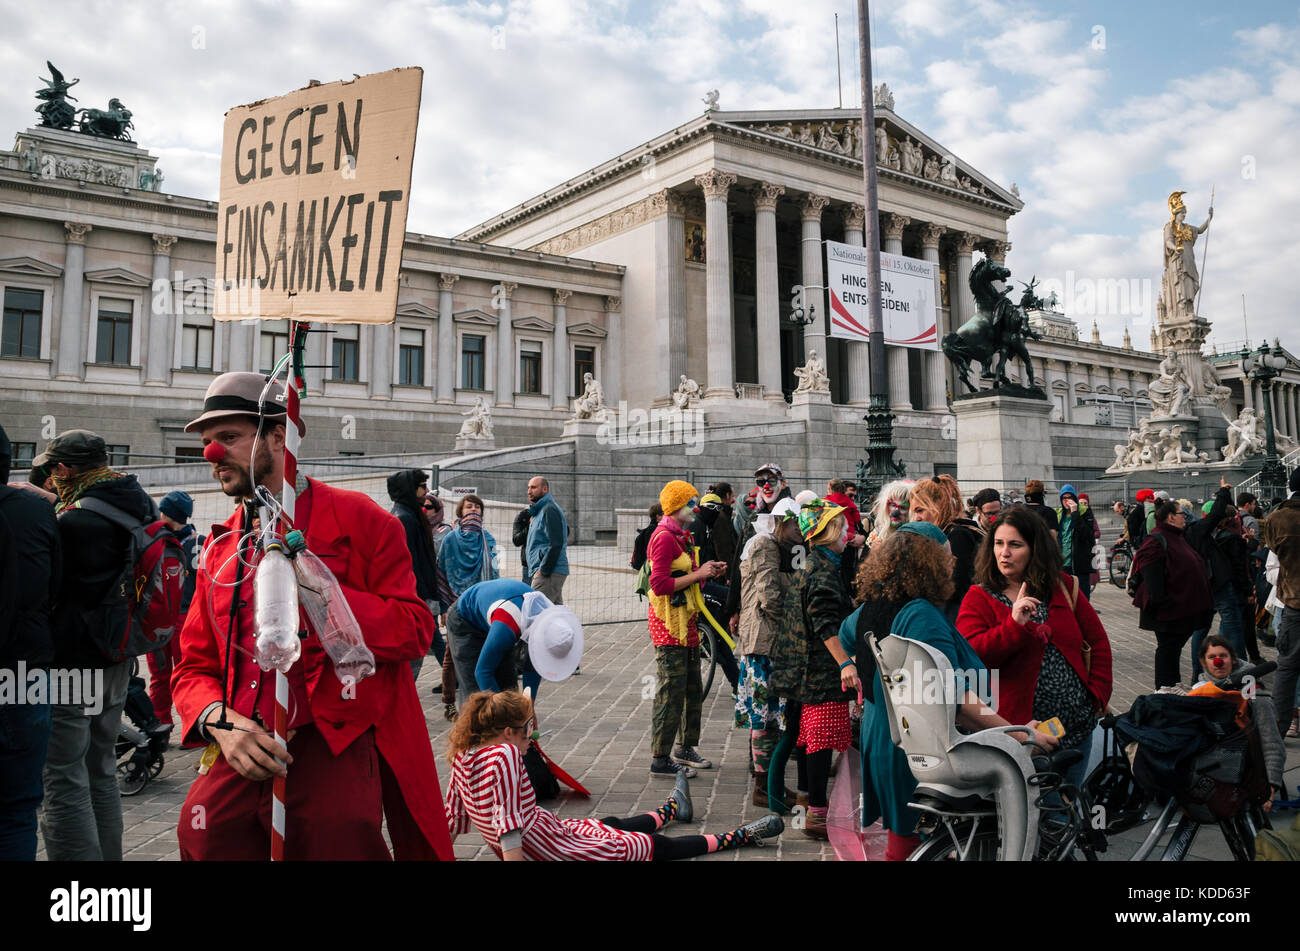 Vienne, Autriche - 1 octobre 2017 : les personnes en costumes de mimes et clowns protester contre l'interdiction autrichienne sur voile intégral dans les lieux publics Banque D'Images